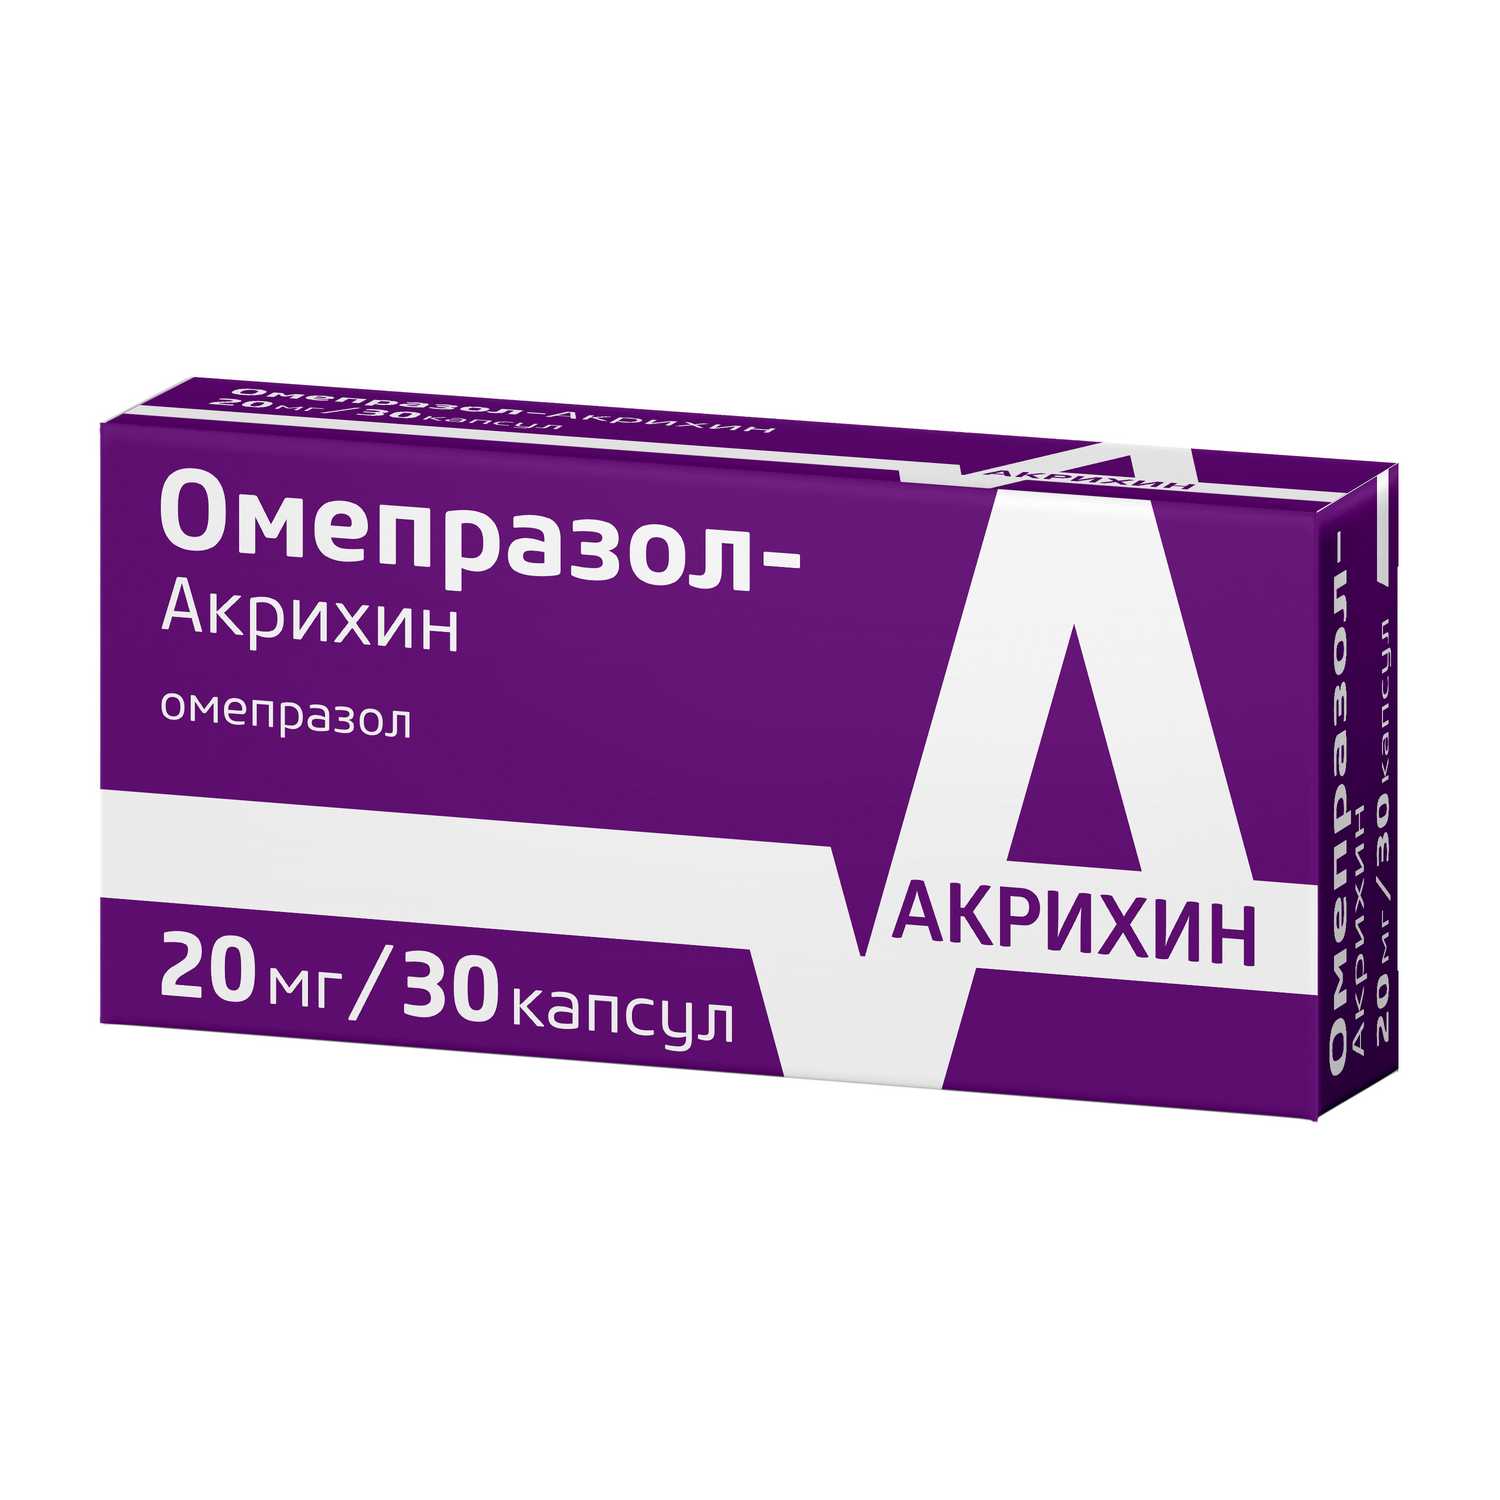 Купить Омепразол-Акрихин капс 20 мг 30 шт (омепразол) по выгодной цене .